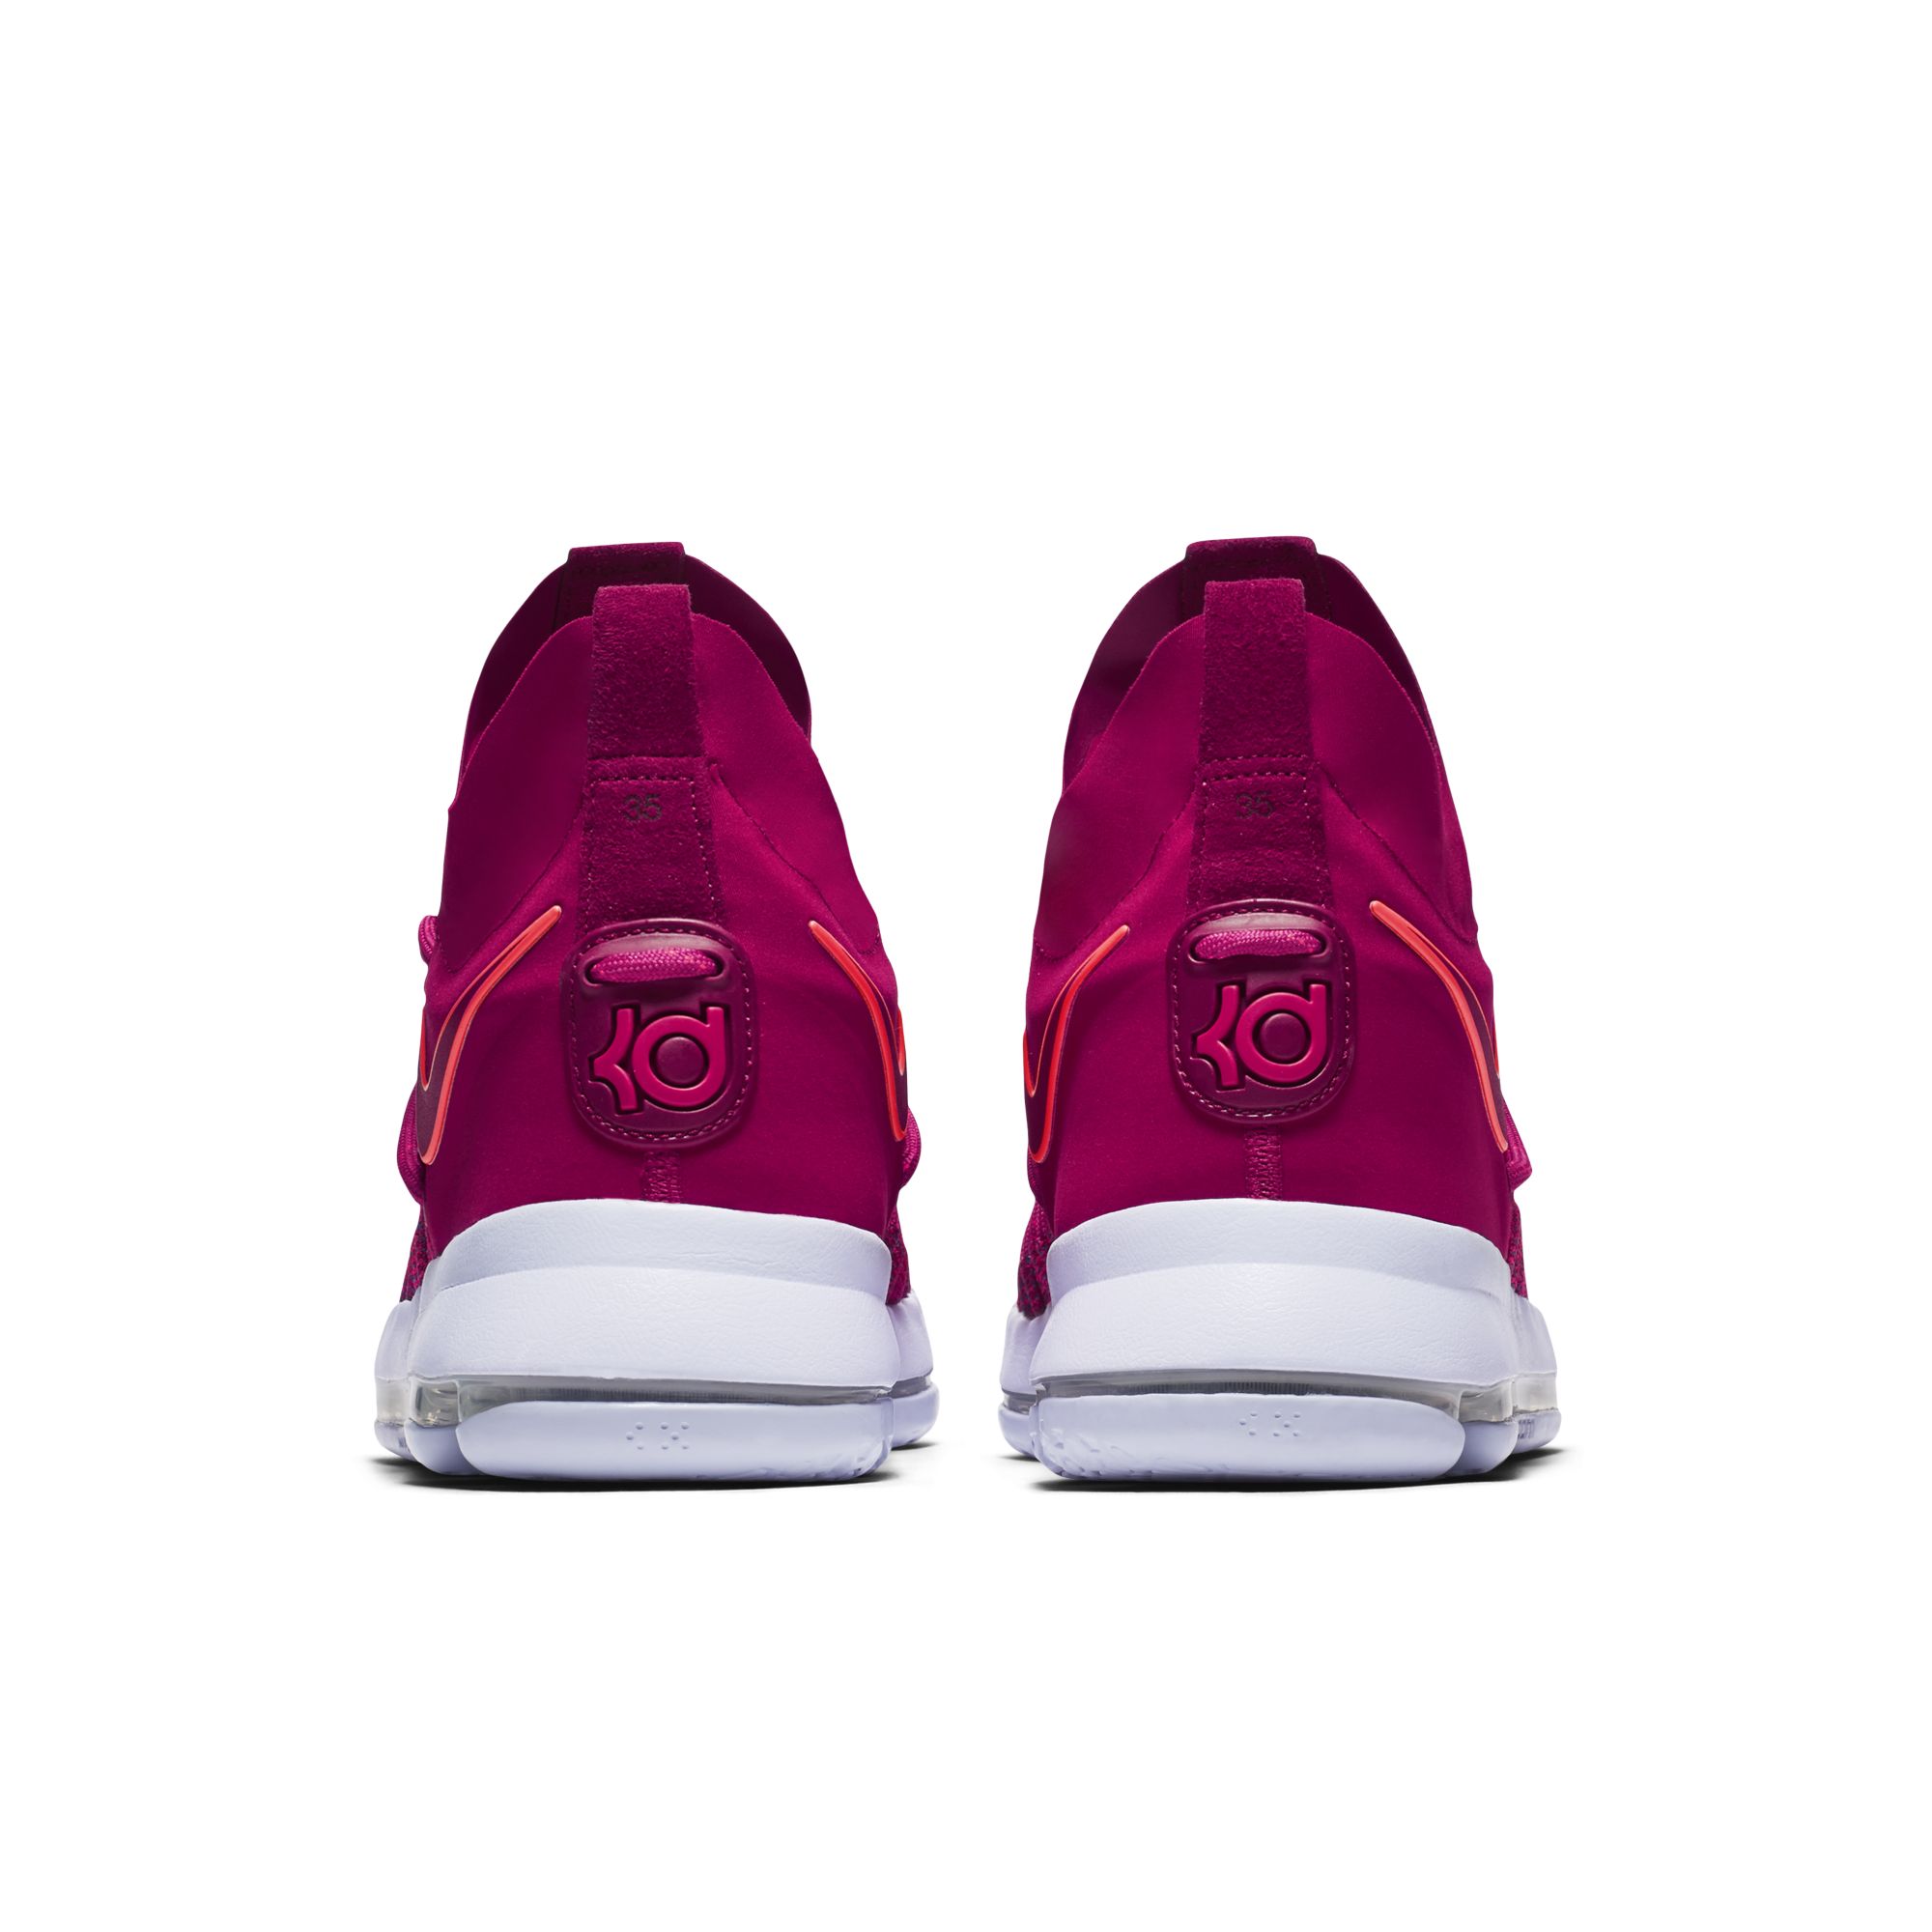 'Racer Pink' Livens Up the Nike KD9 Elite - WearTesters